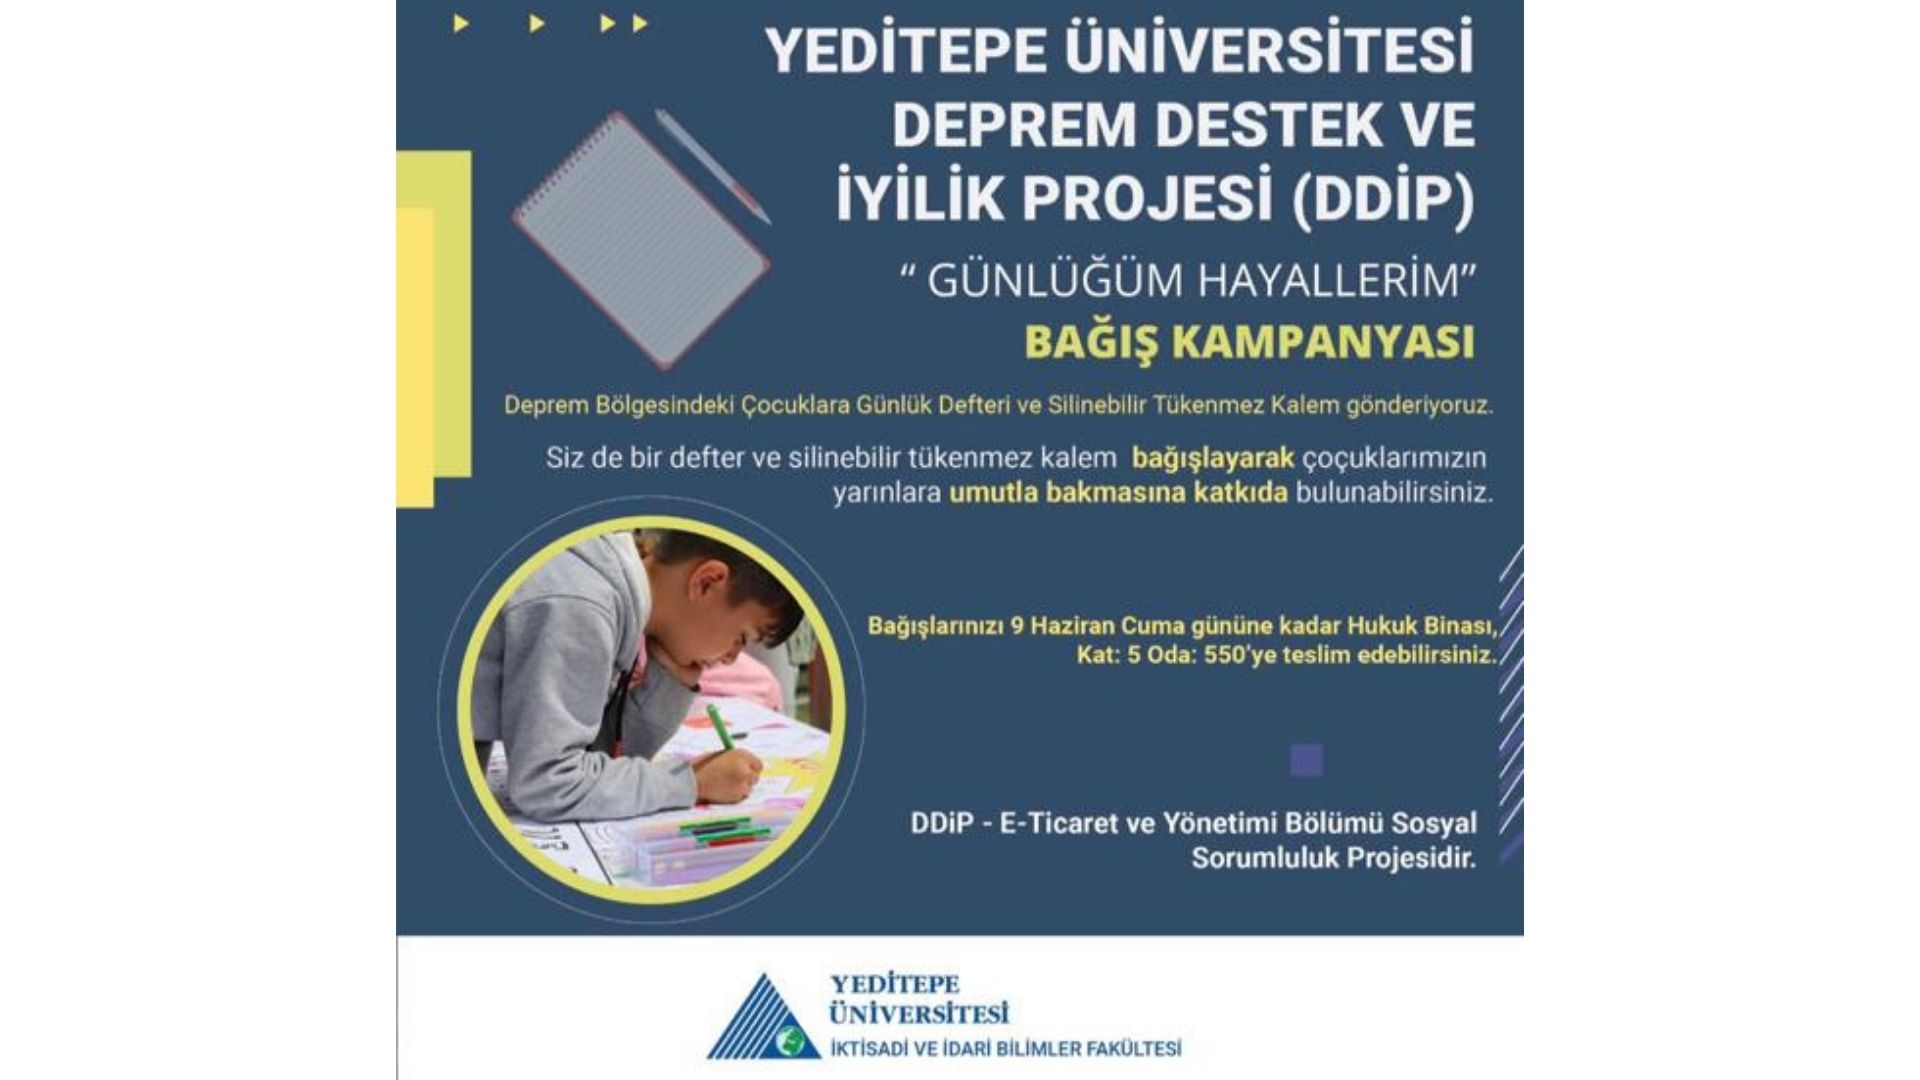 Yeditepe Üniversitesi Deprem Destek ve İyilik Projesi